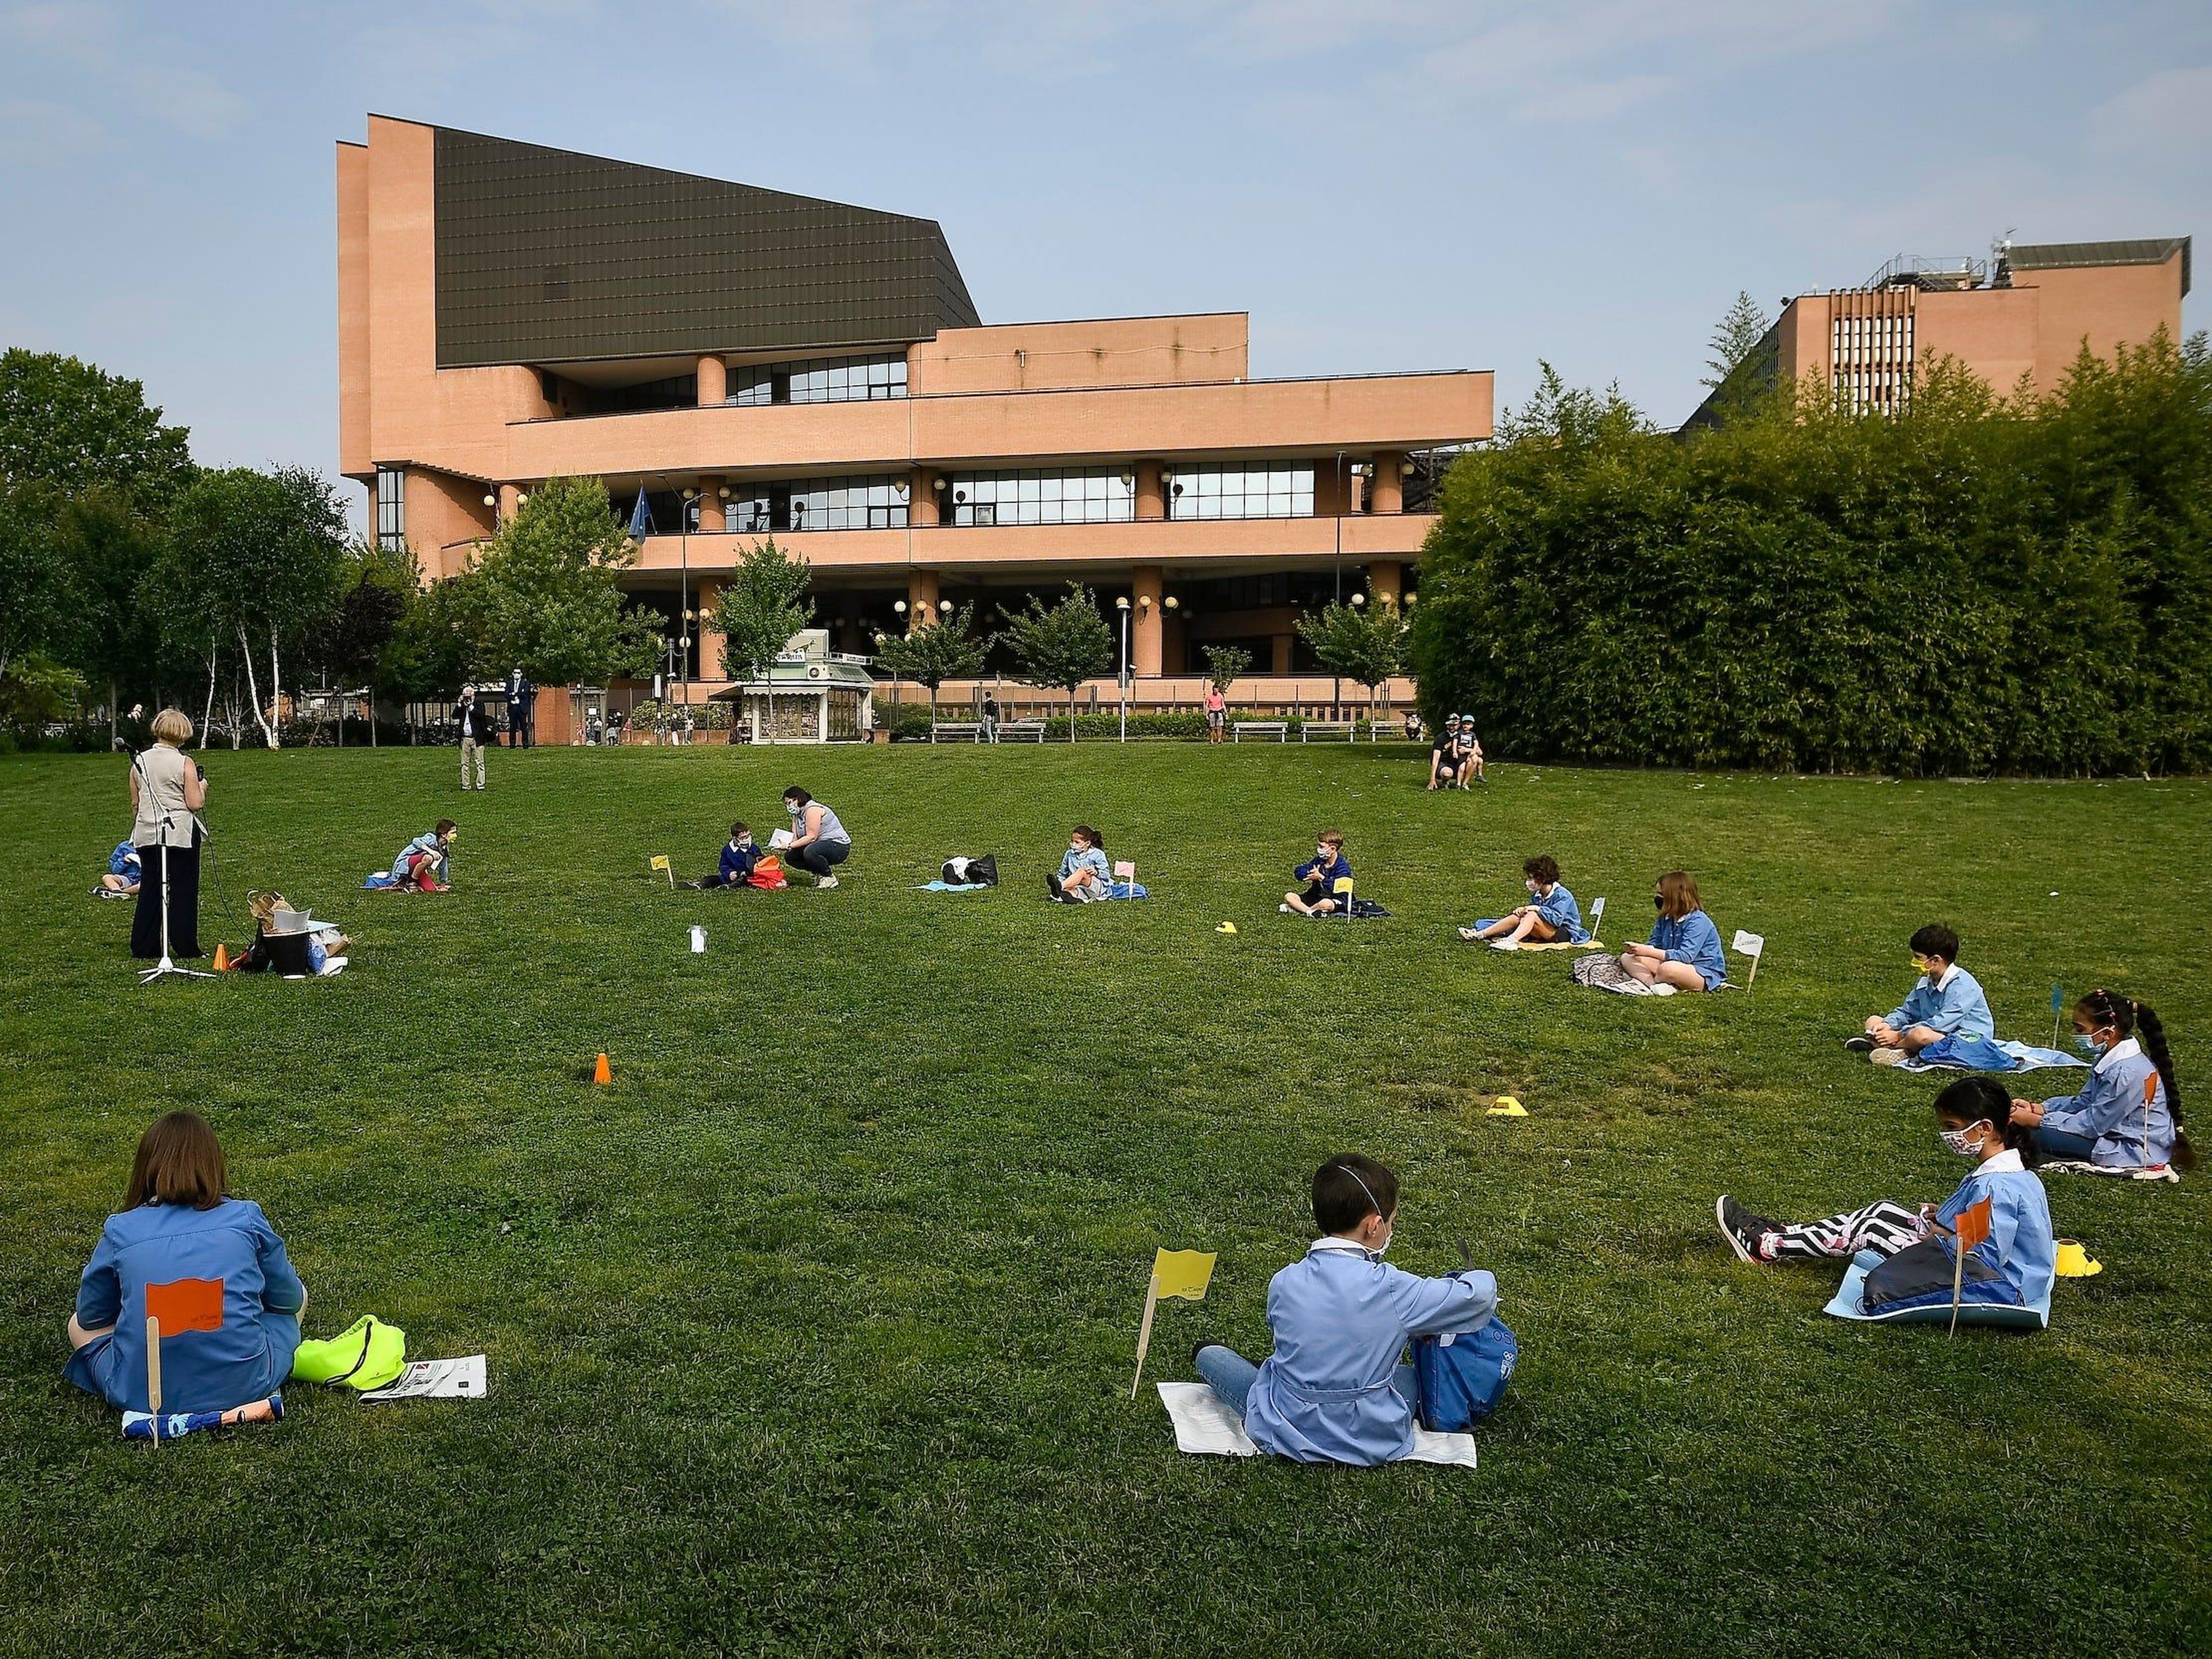 Un ejemplo de clases al aire libre en Turín, Italia, en junio de 2020.